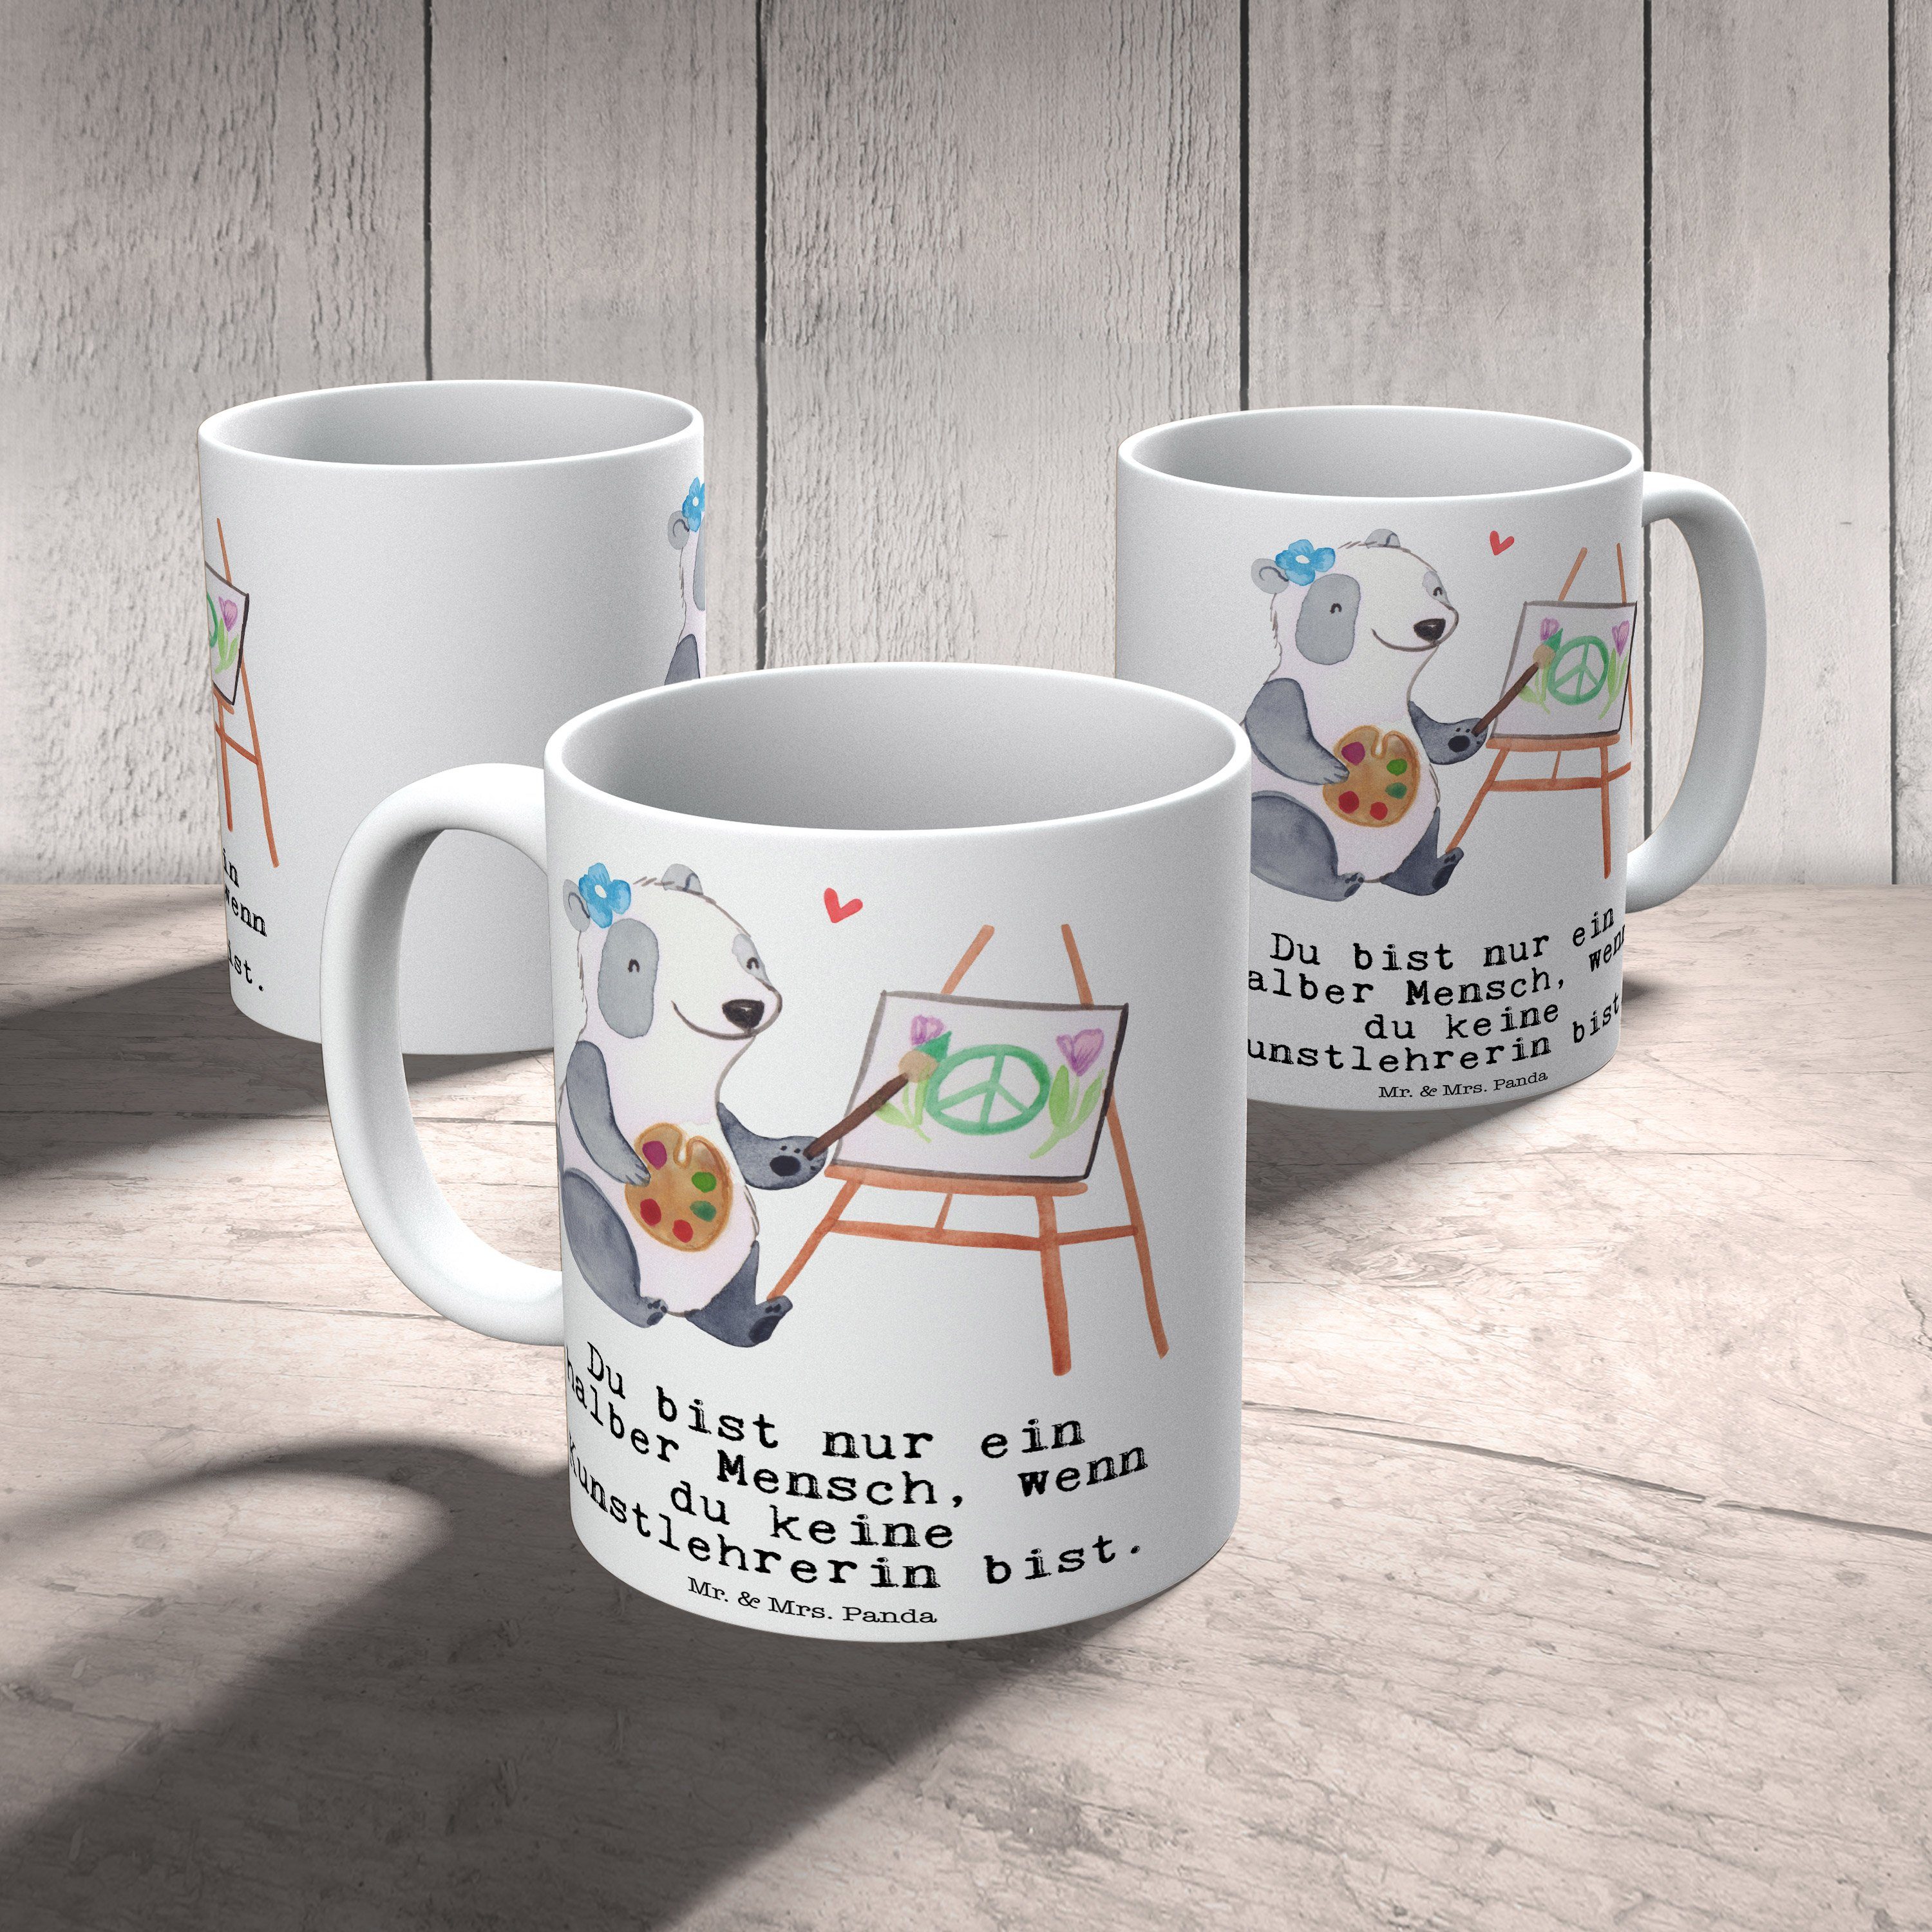 Mr. & Mrs. Panda - Geschenk, mit Weiß Kaffeebecher, - Herz Keramik Tas, Tasse Jubiläum, Kunstlehrerin